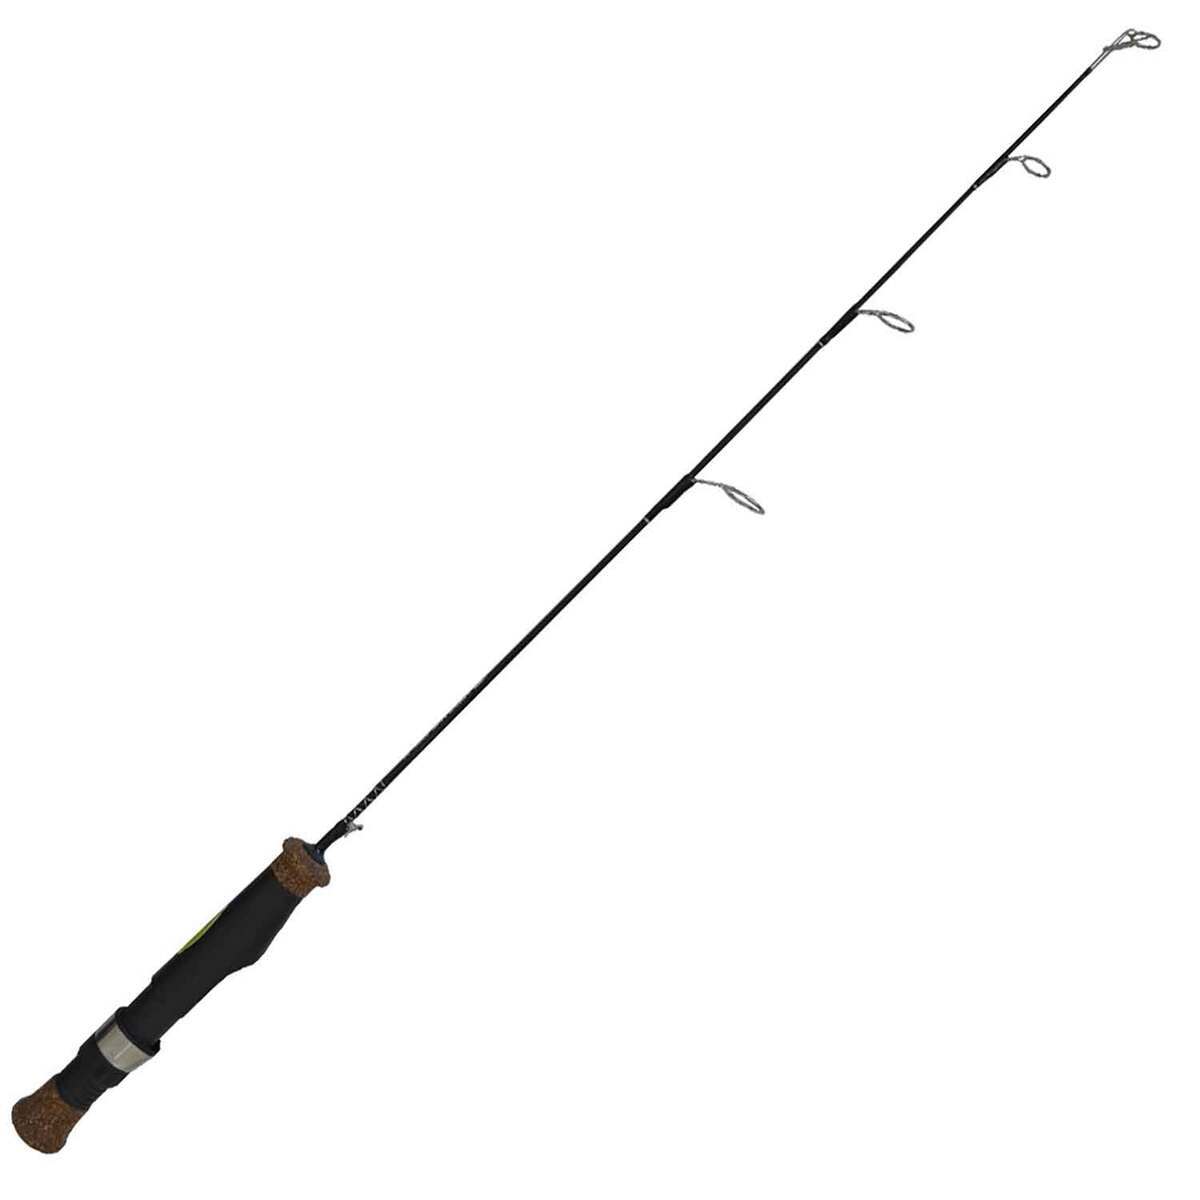 H T Enterprises Inc Polar Fire Select SX Ice Fishing Rod - Black